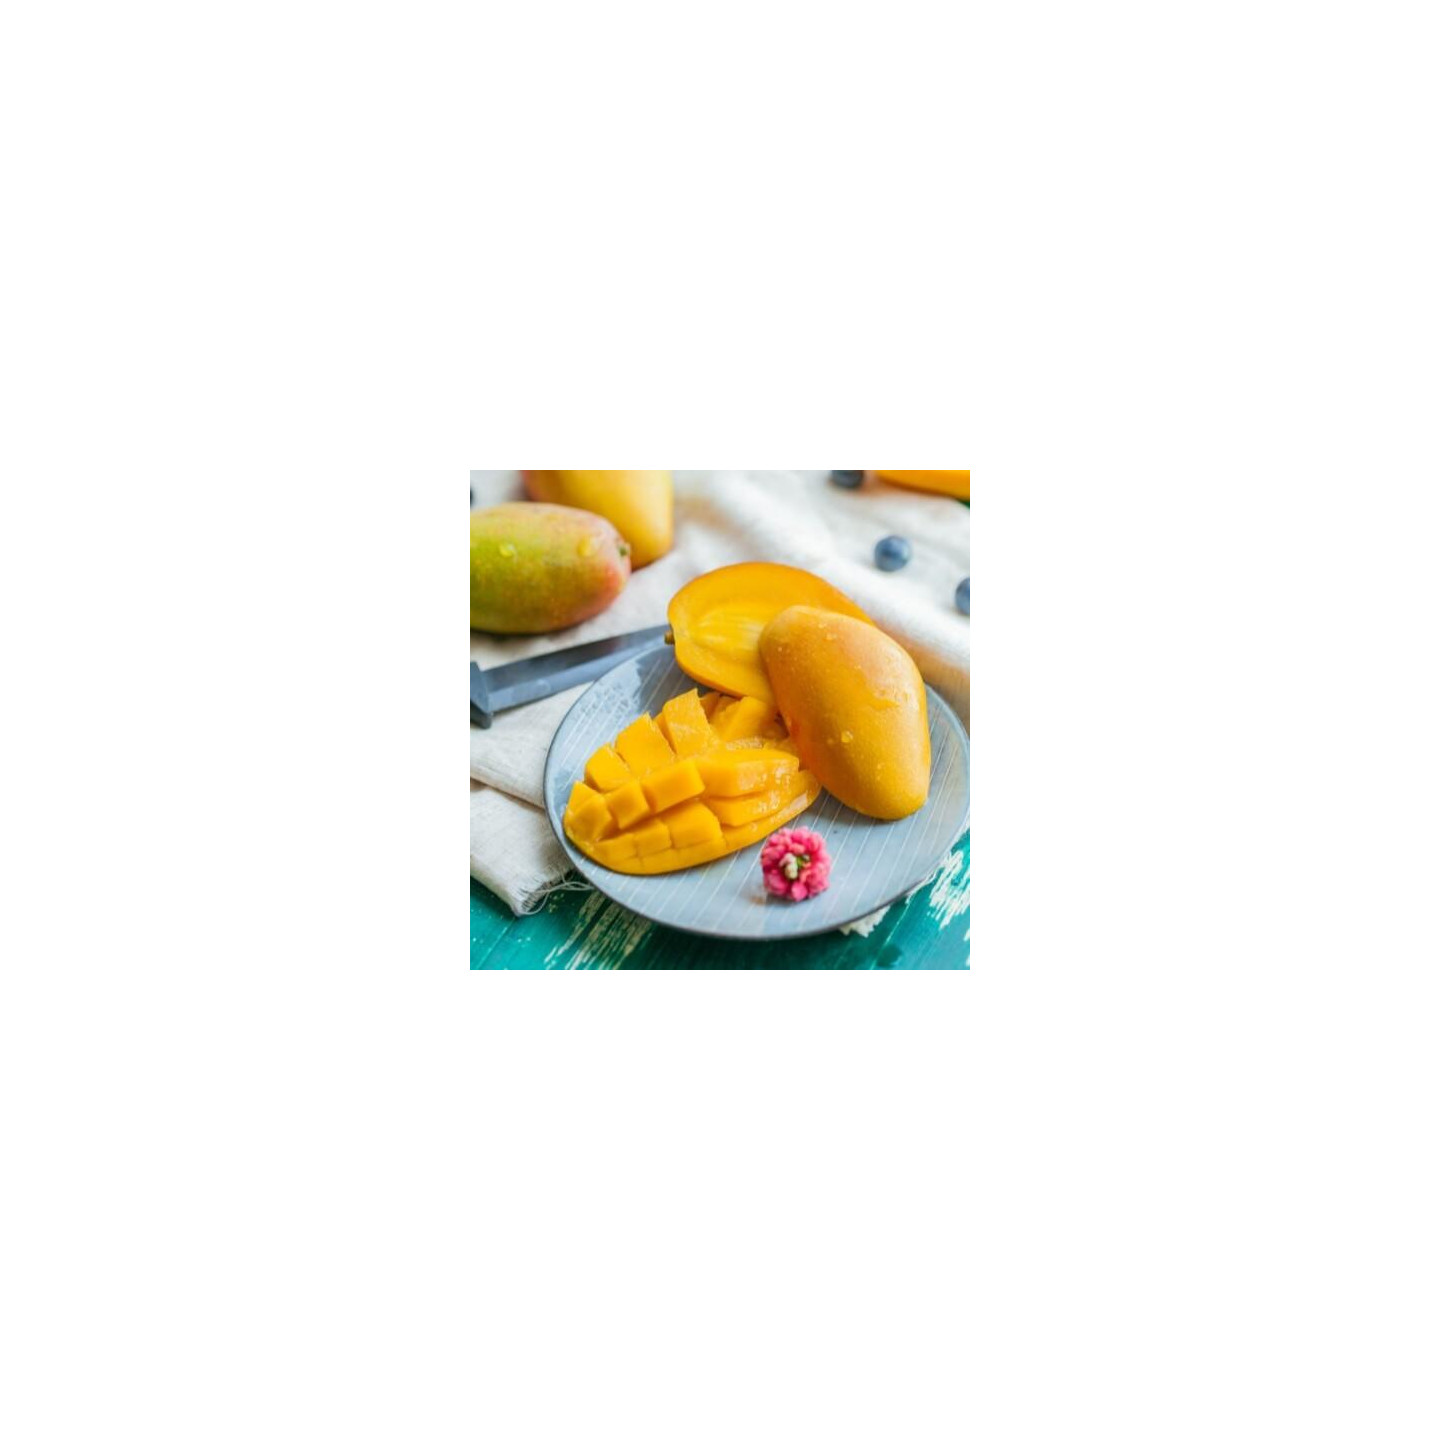 Purée de Mangue Capfruit 1kg - Purées de Fruits, Mangues - Épicerie, vente  achat acheter